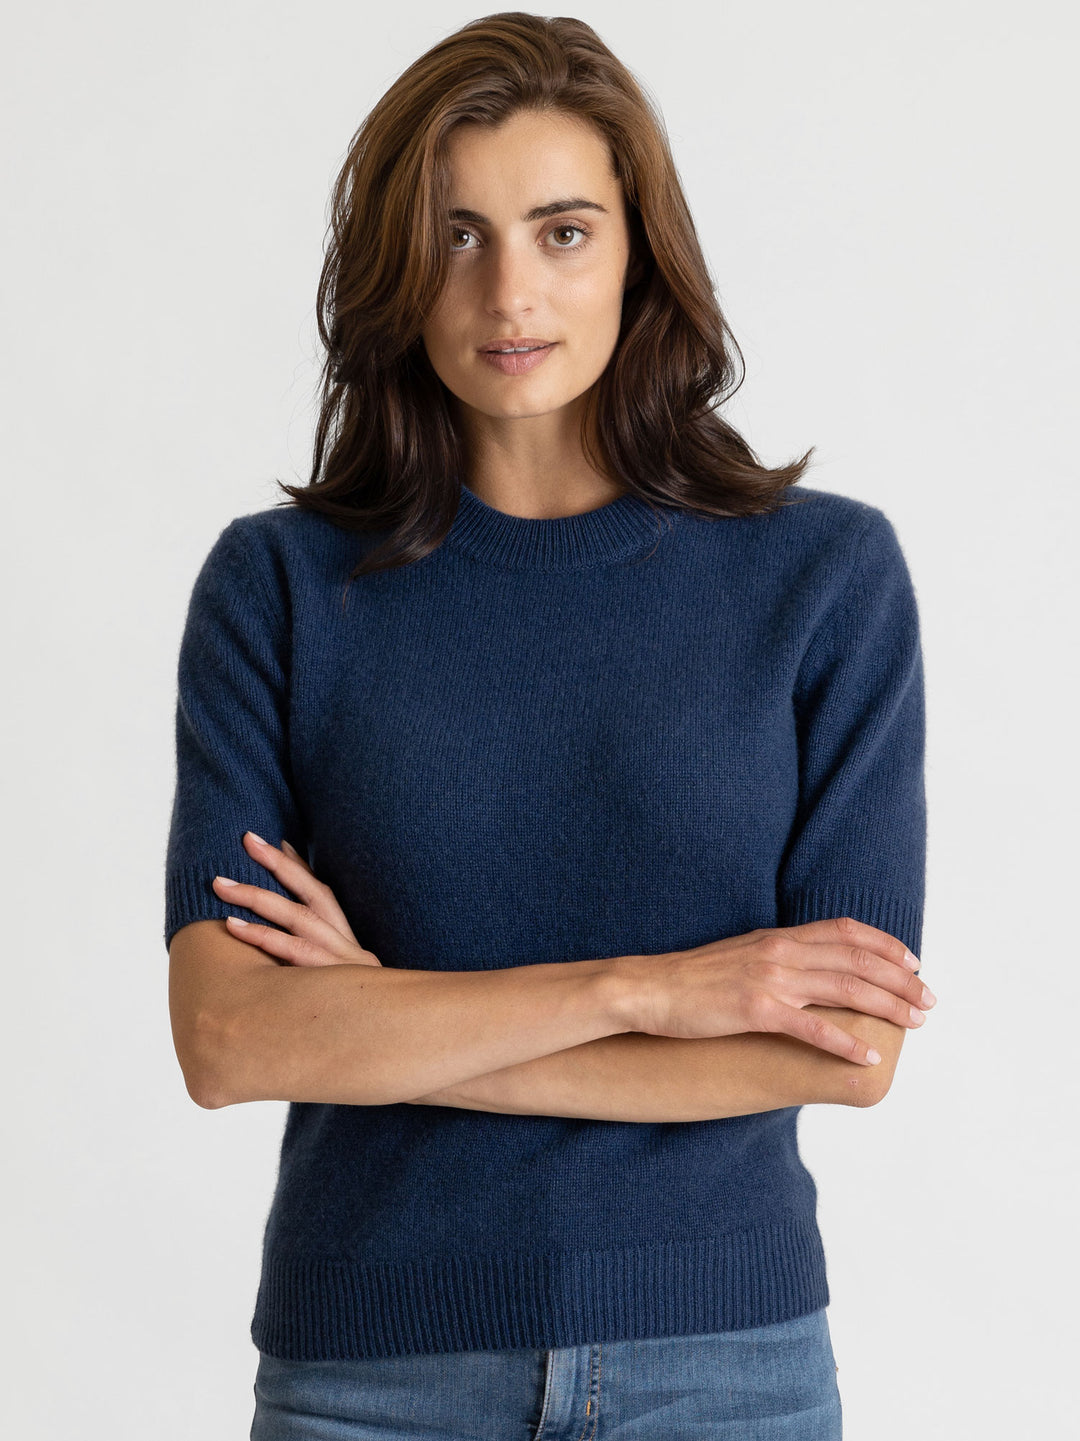 Shortsleeved cashmere sweater, deep blue, luxury kashmina norwegian design sustainable fashion